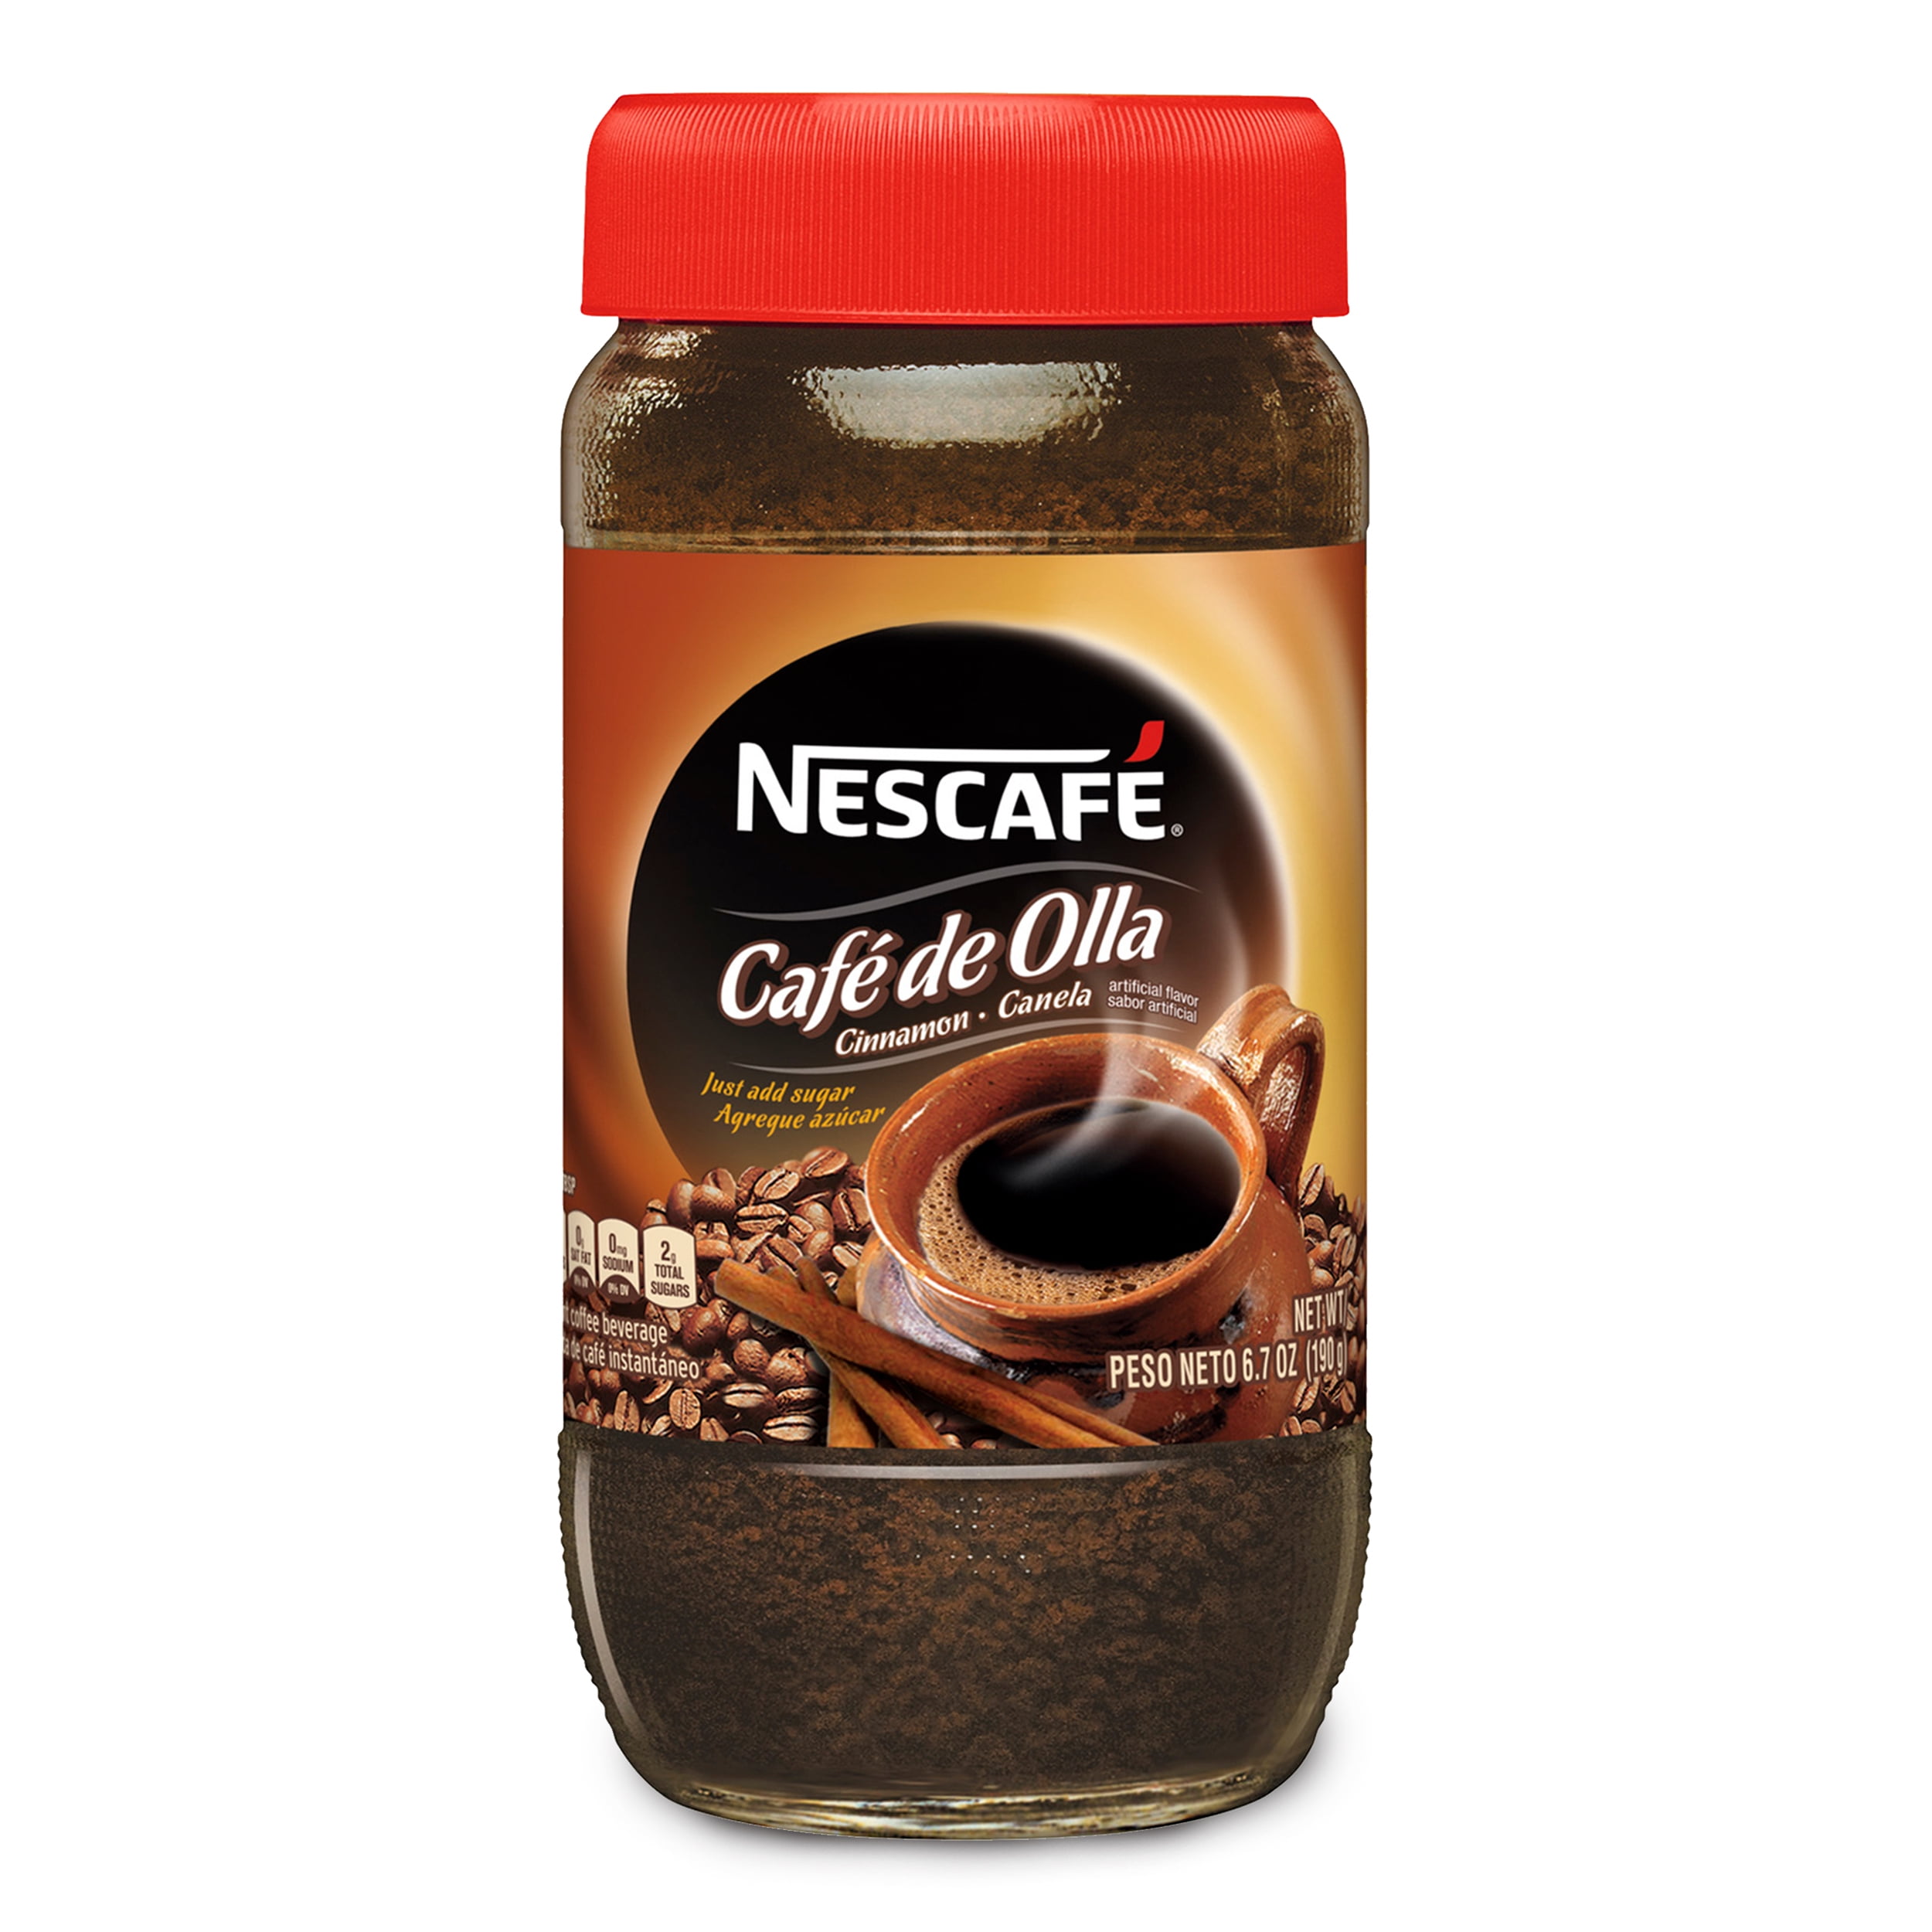 Nescafe Instant Coffee Beverage Powder, Cafe de Olla - 6.7 oz jar